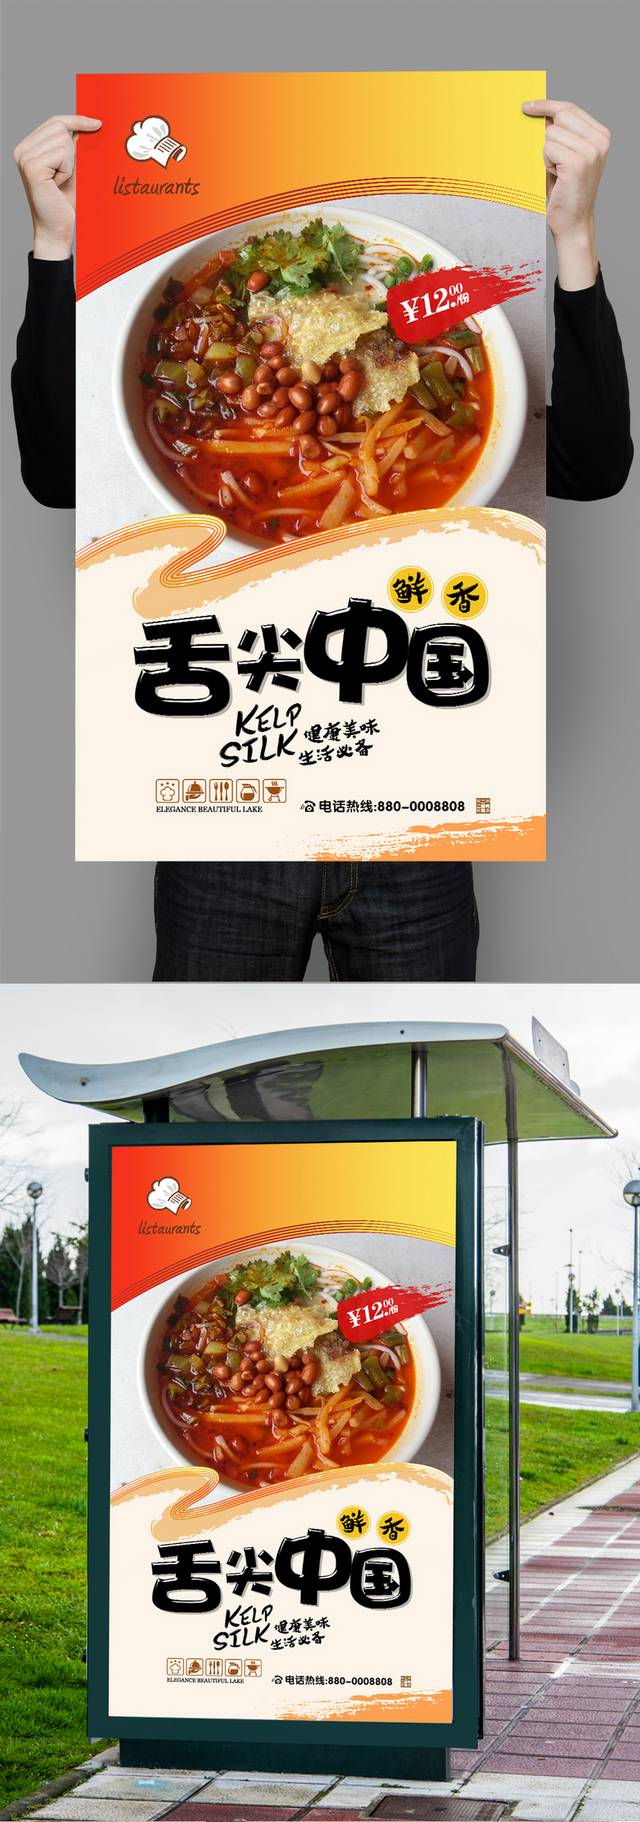 高清螺蛳粉宣传海报设计psd